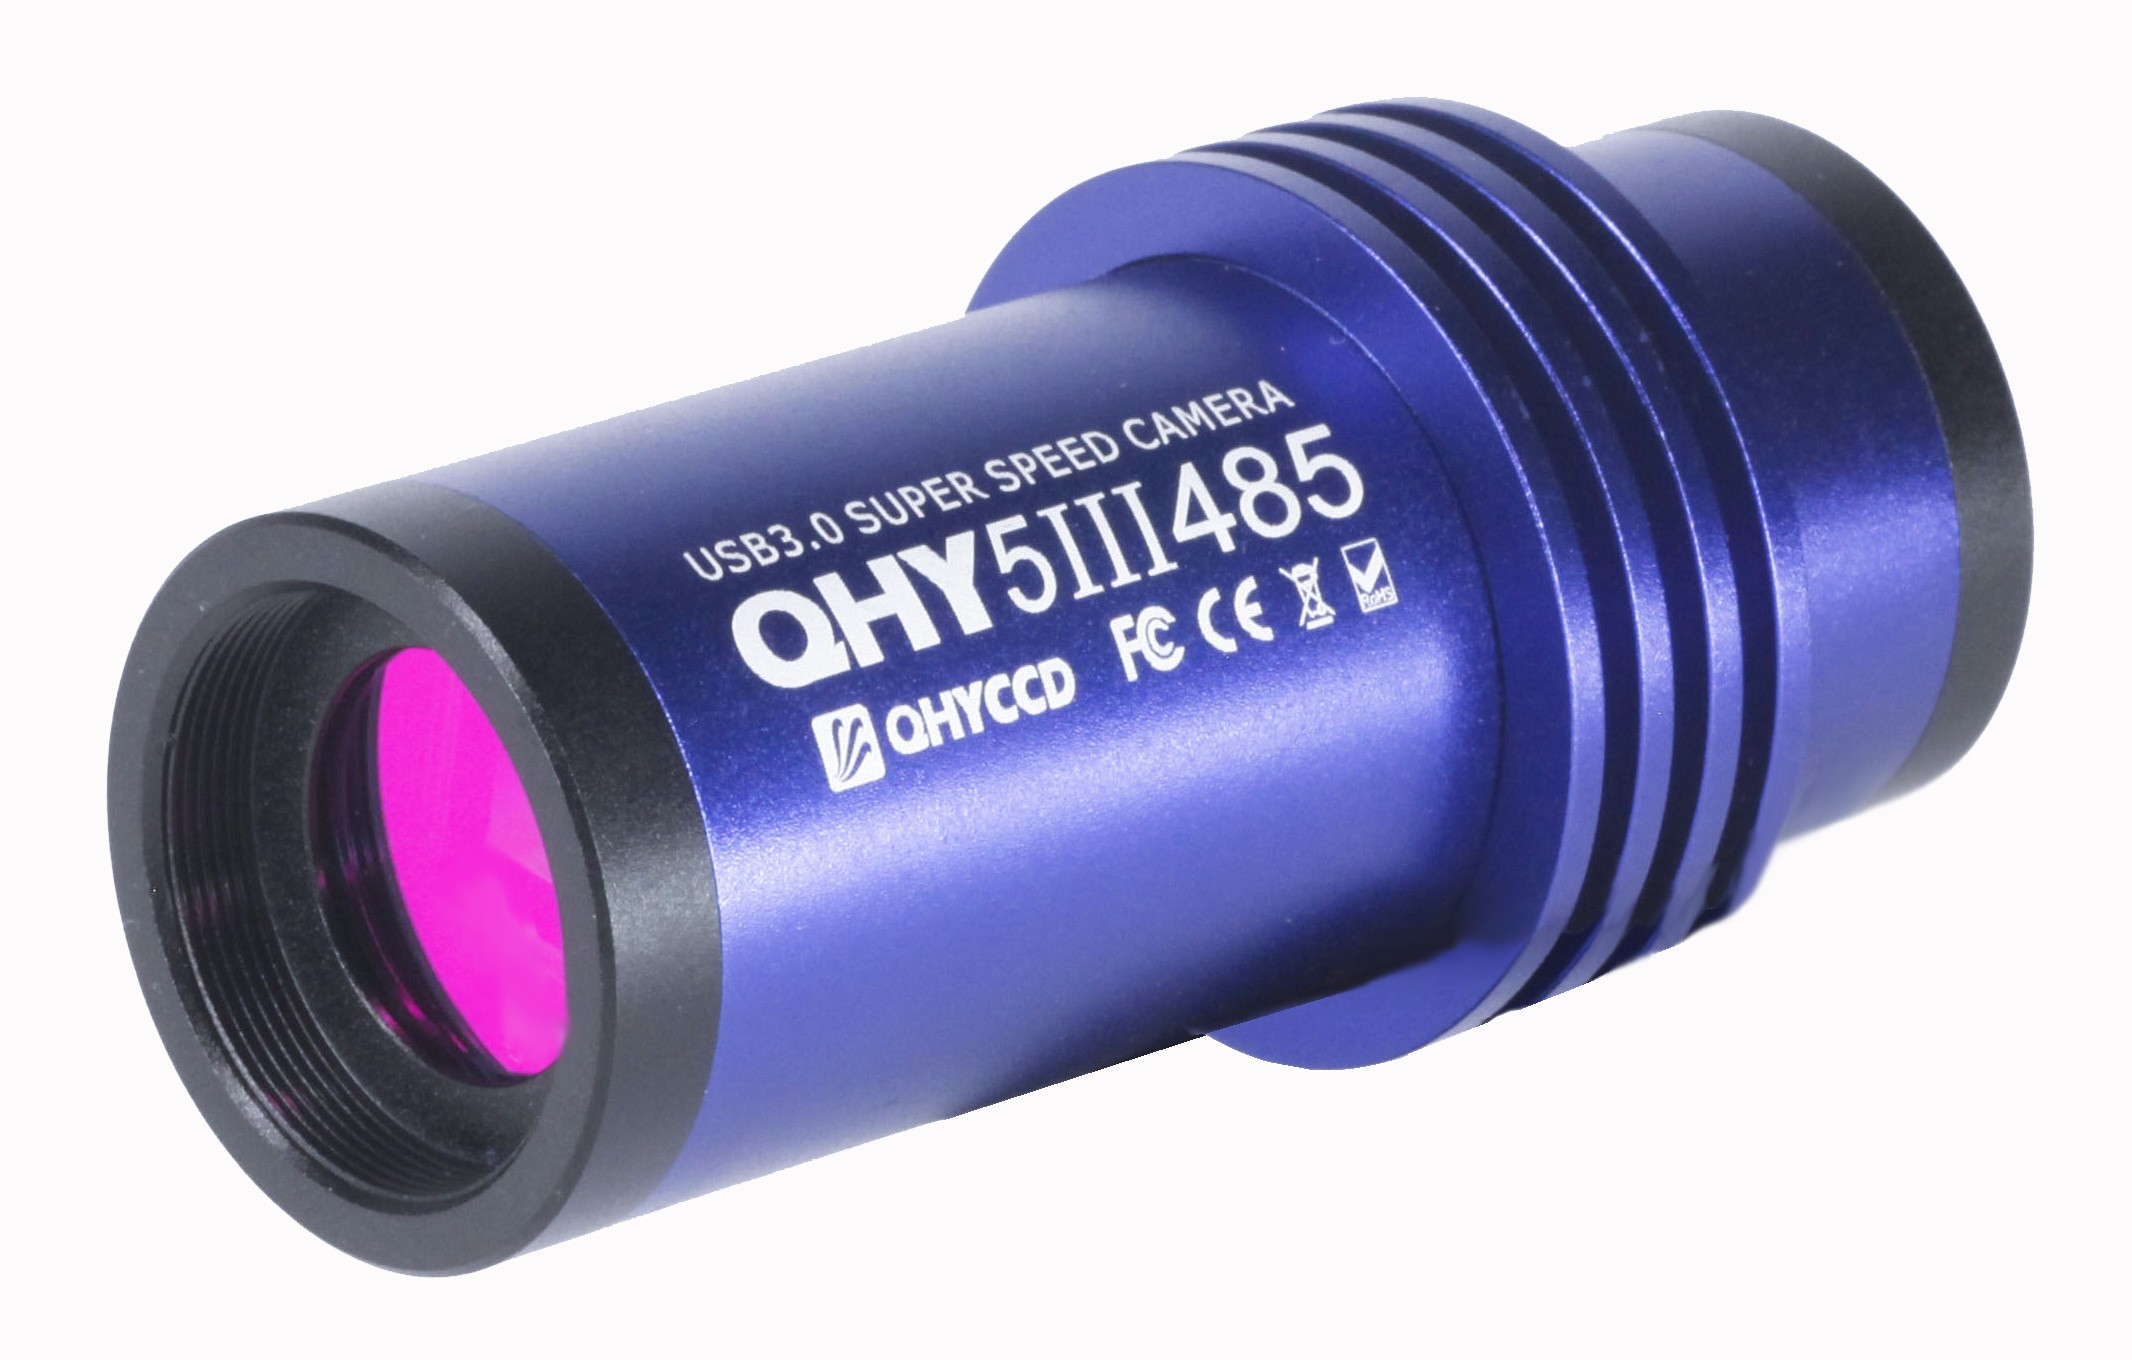  QHY5 III 485 colore -  con sensore retro illuminato  